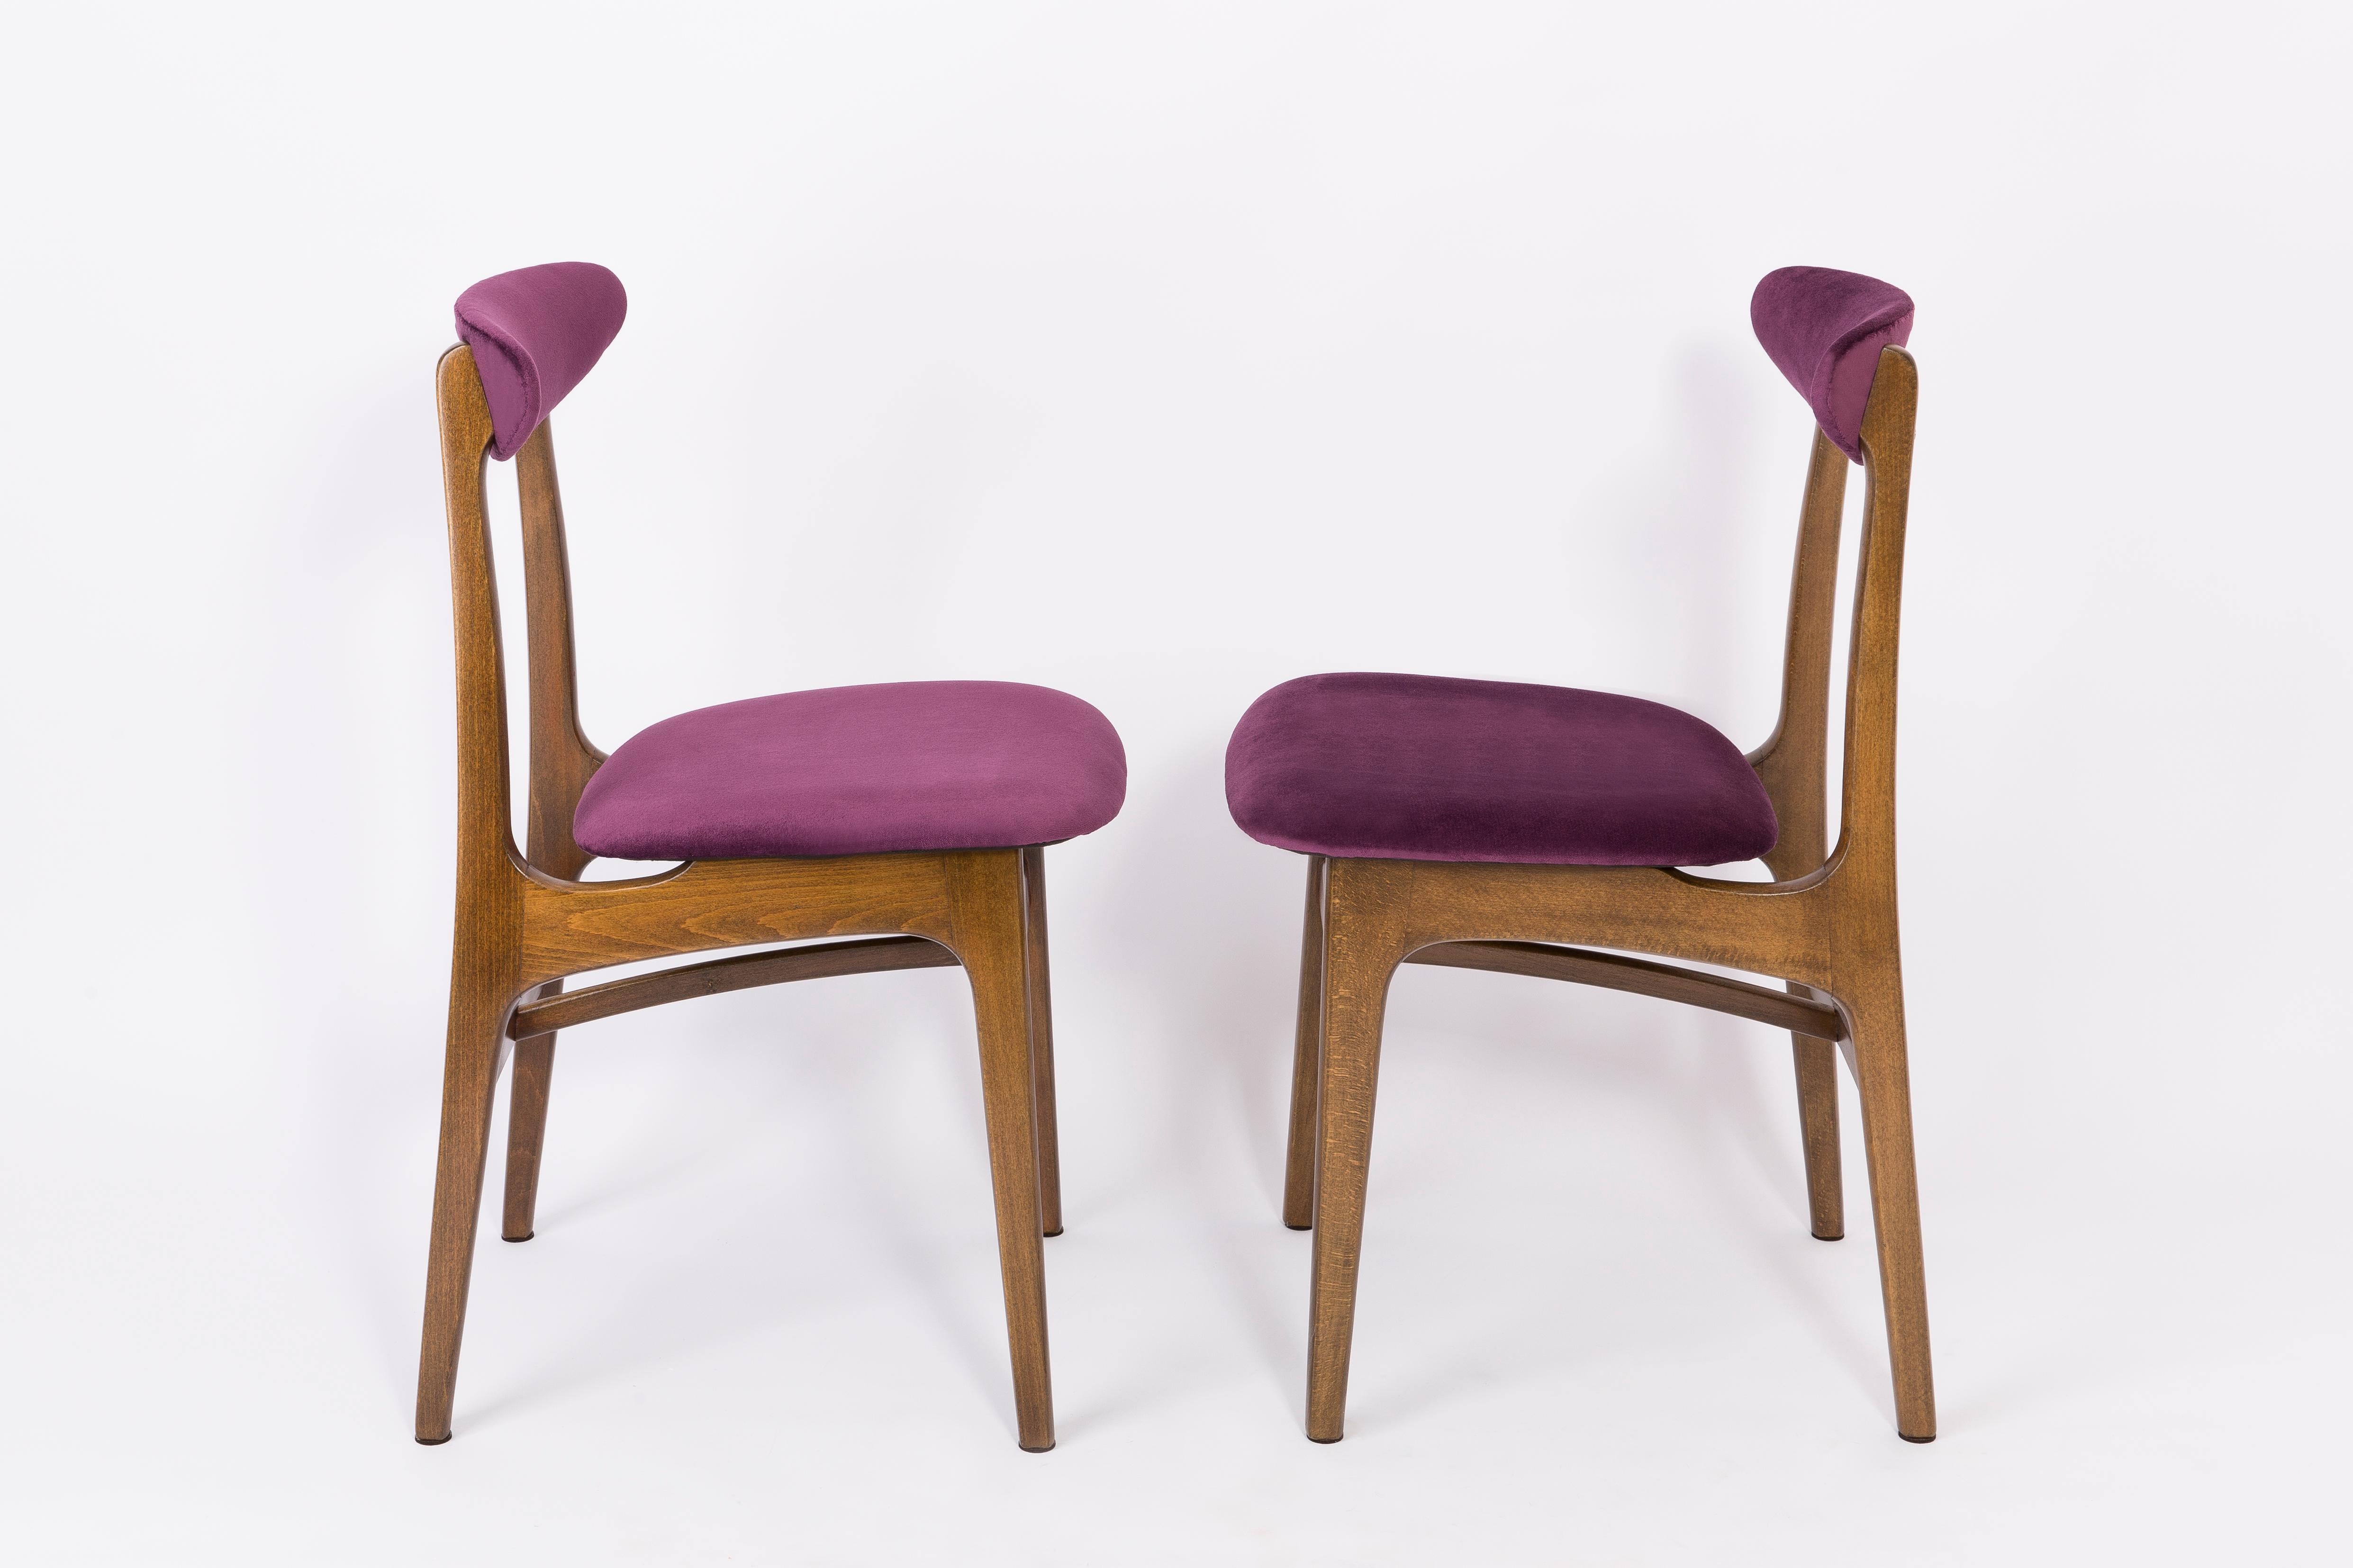 Chaises conçues par le professeur Rajmund Halas. Elles ont été fabriquées en bois de hêtre. Ils ont fait l'objet d'une rénovation complète de la tapisserie d'ameublement et les boiseries ont été rafraîchies. Les sièges et les dossiers ont été